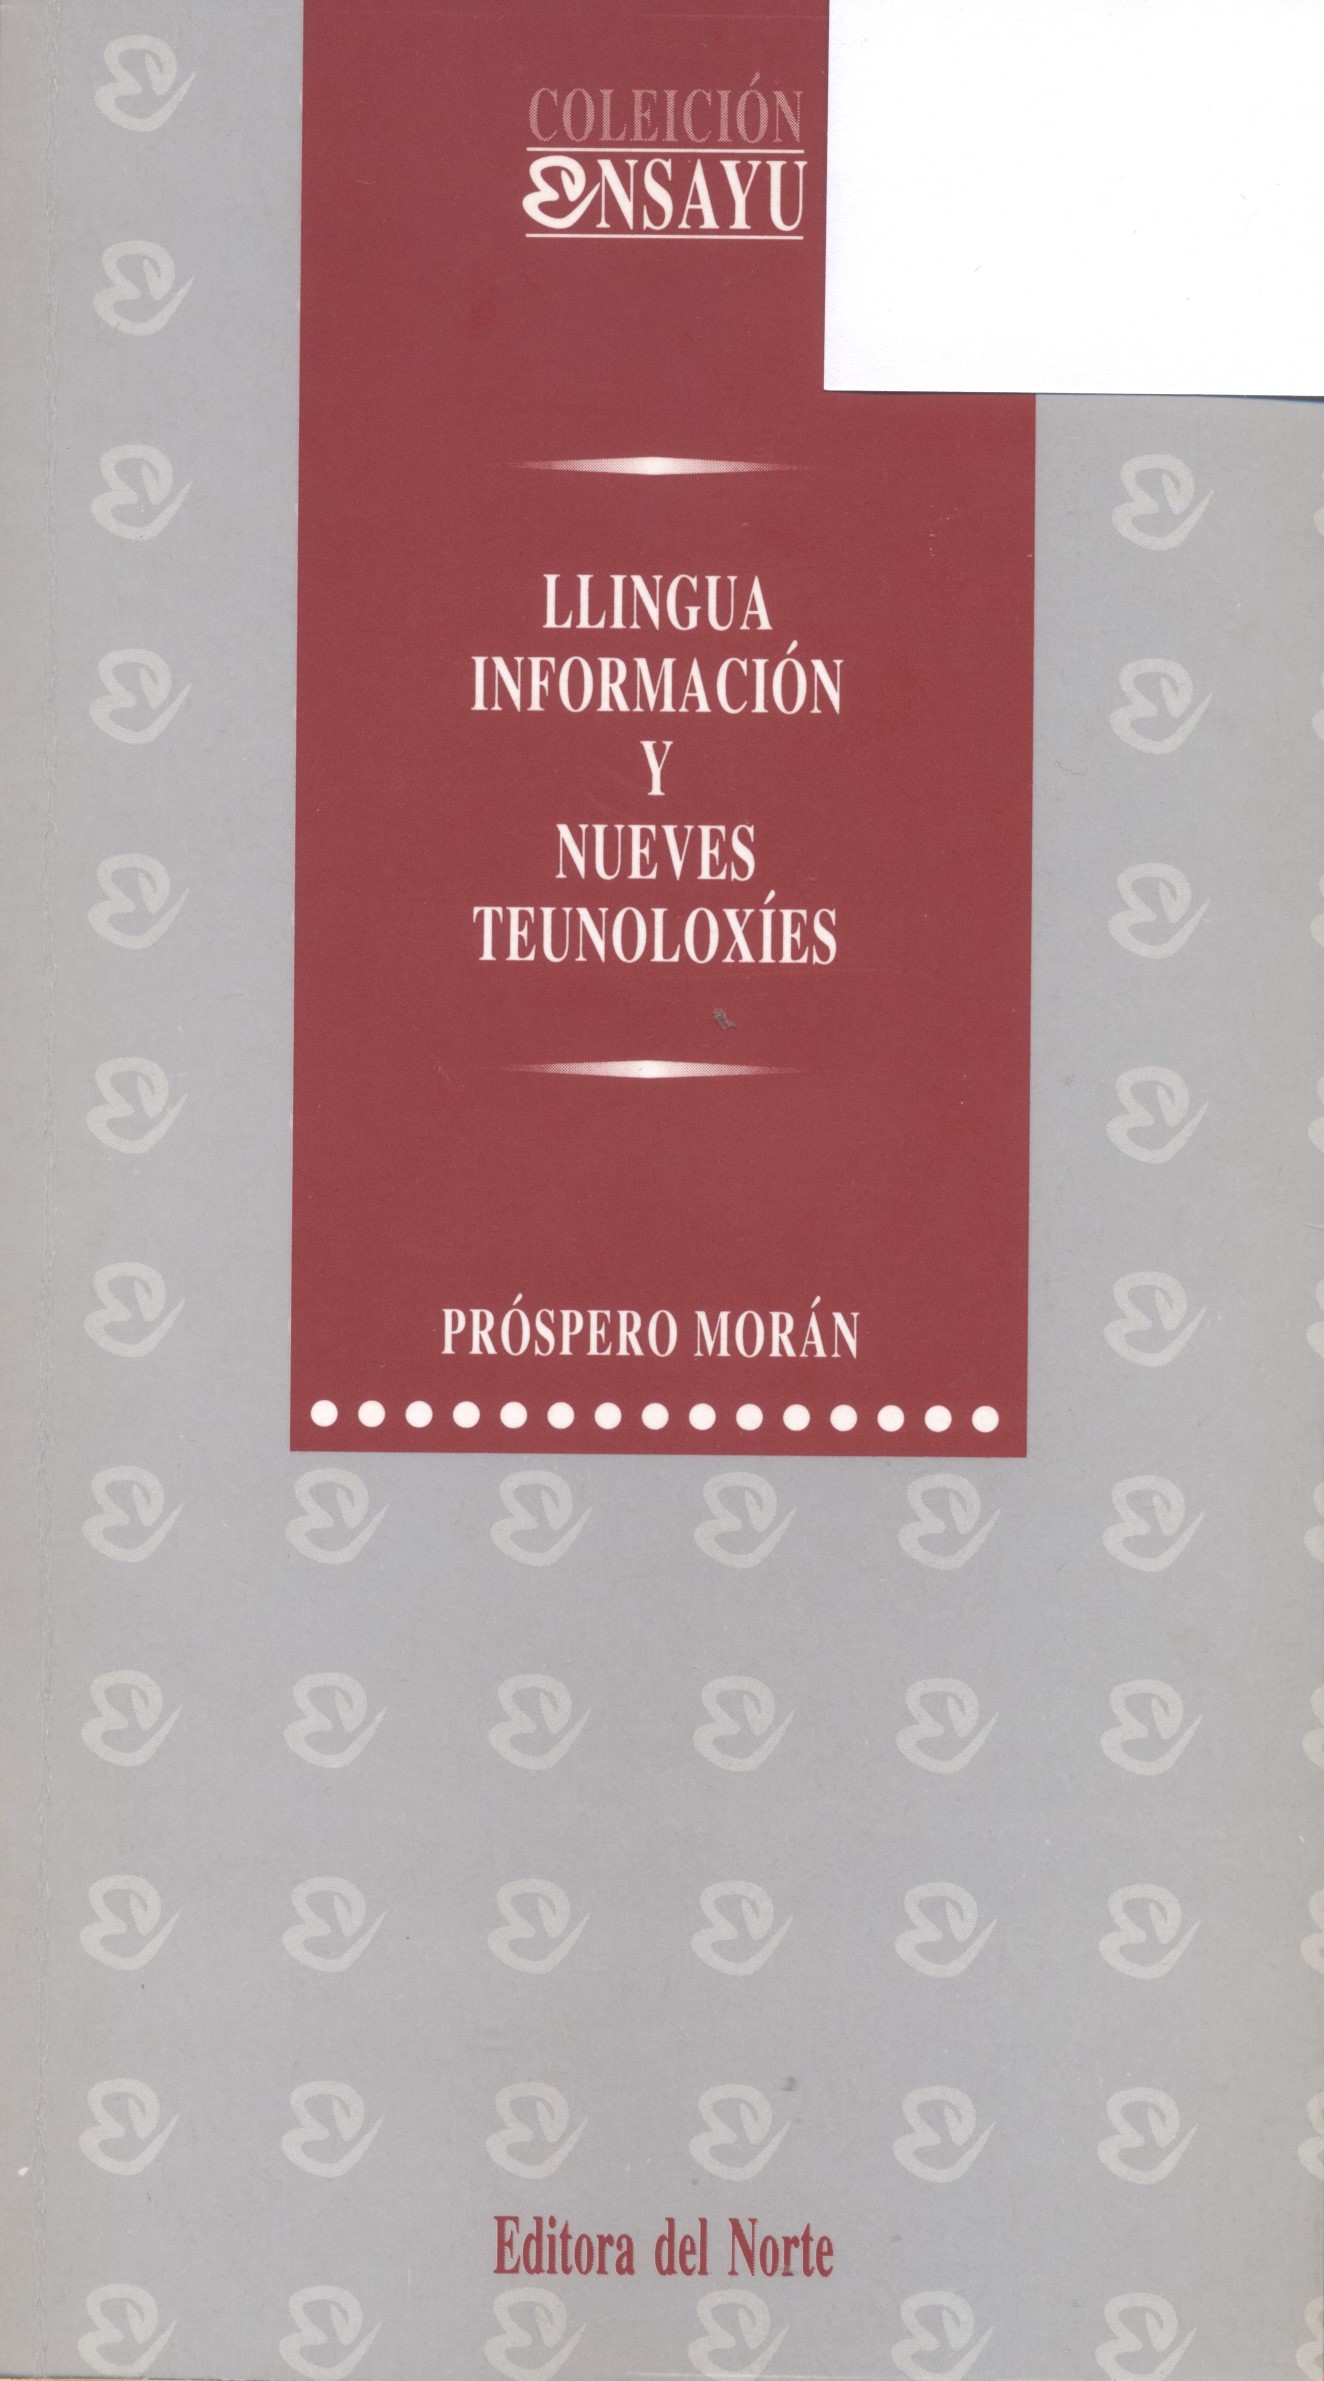 Imagen de portada del libro Llingua, información y nueves teunoloxíes